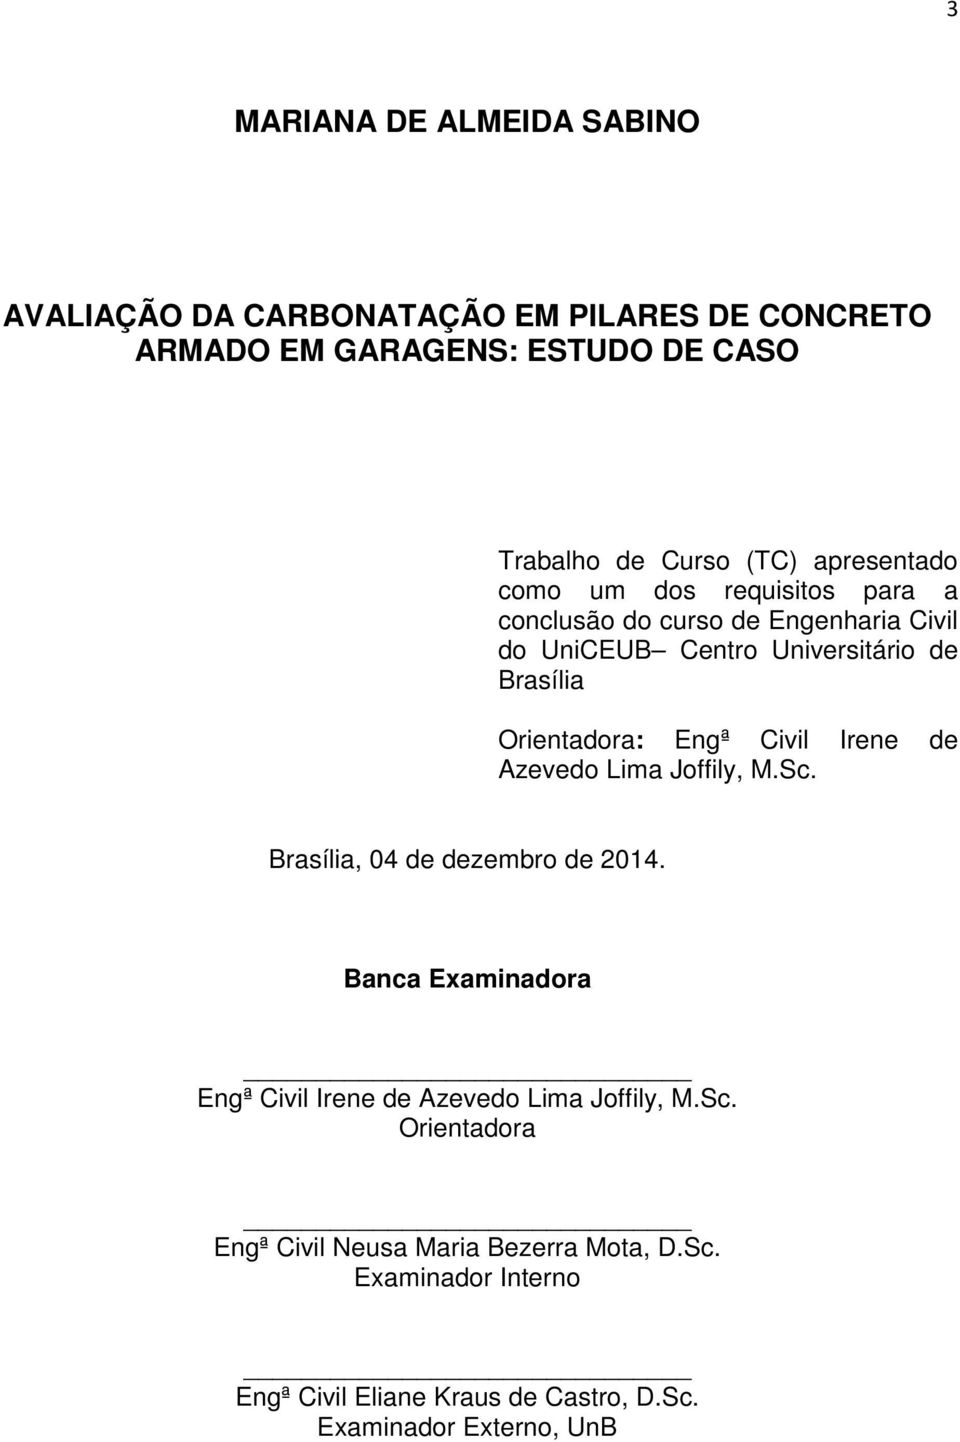 Engª Civil Irene de Azevedo Lima Joffily, M.Sc. Brasília, 04 de dezembro de 2014.